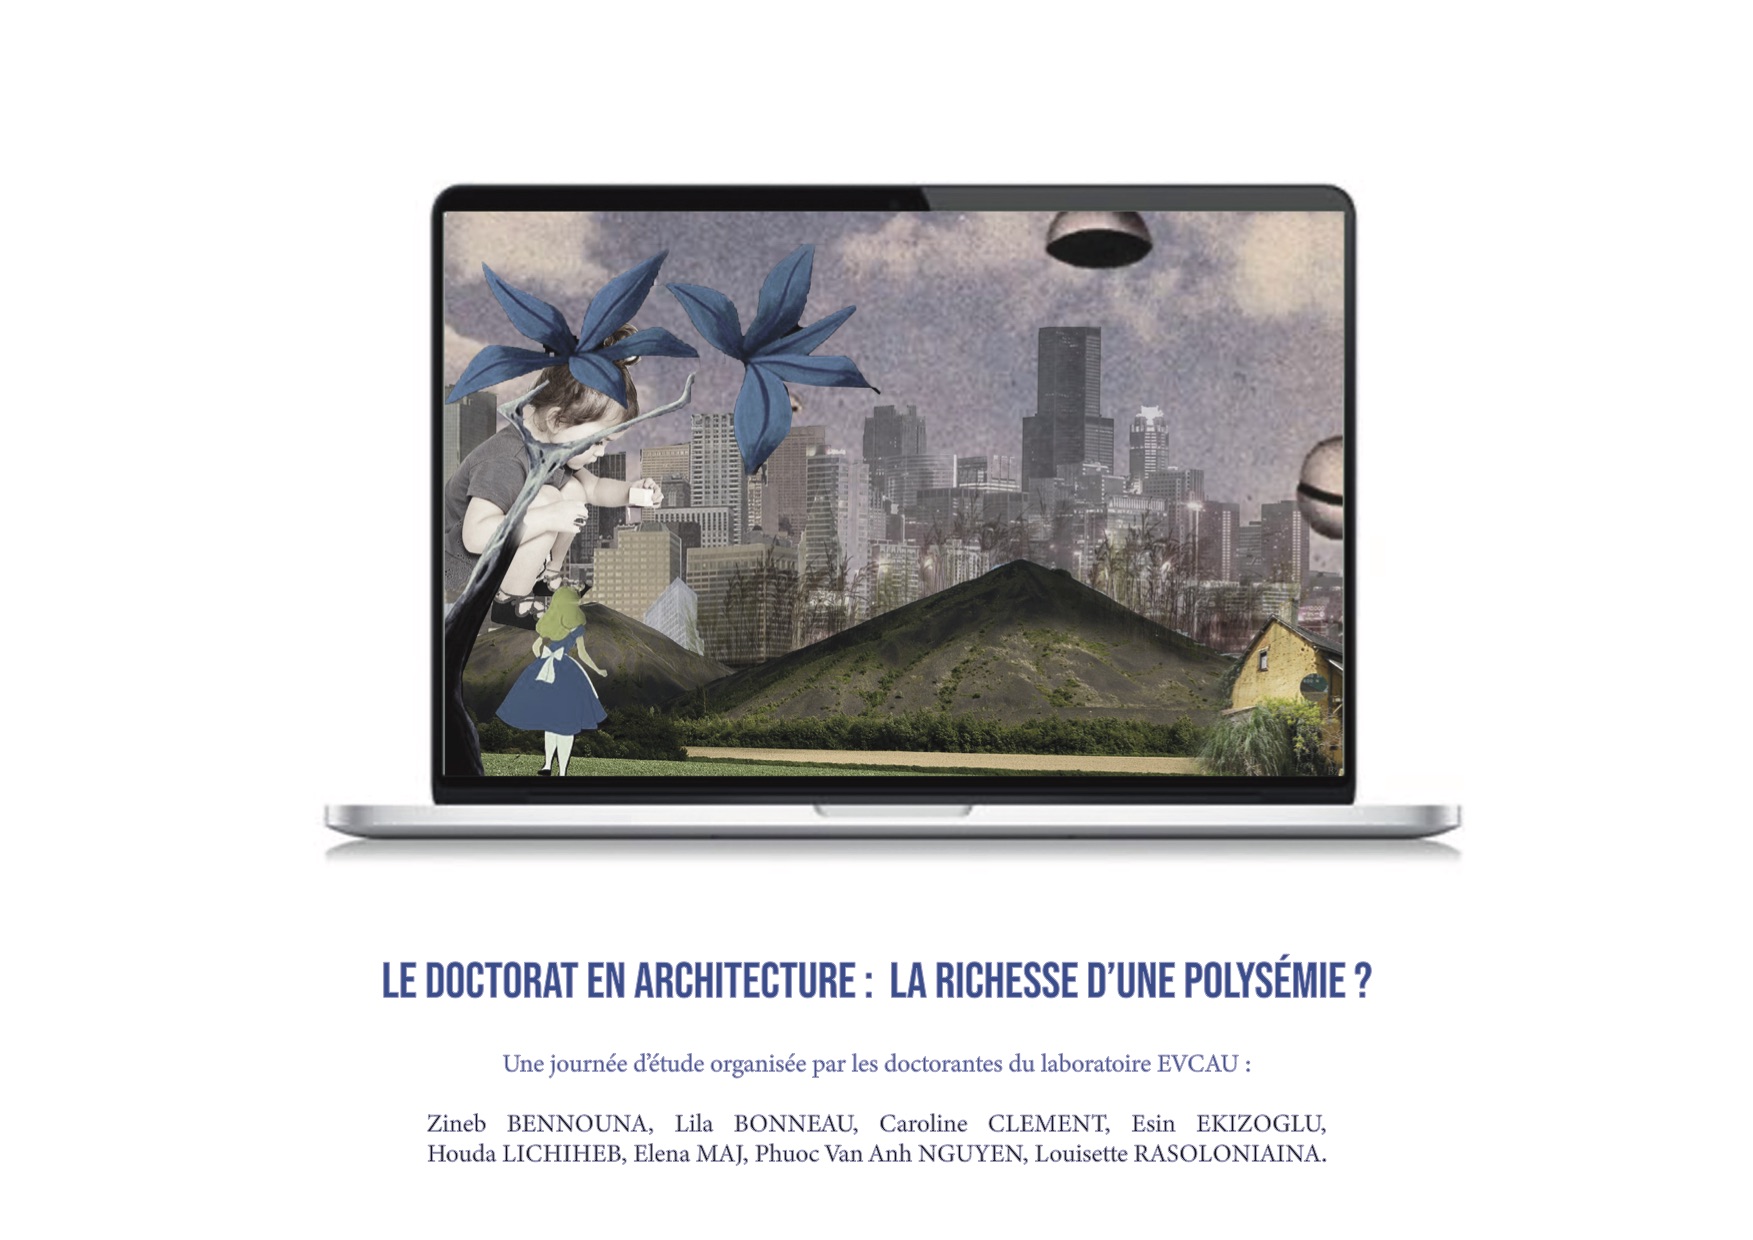 19-20/11/20 - Journée d'études "Le doctorat en architecture : la richesse d'une polysémie"